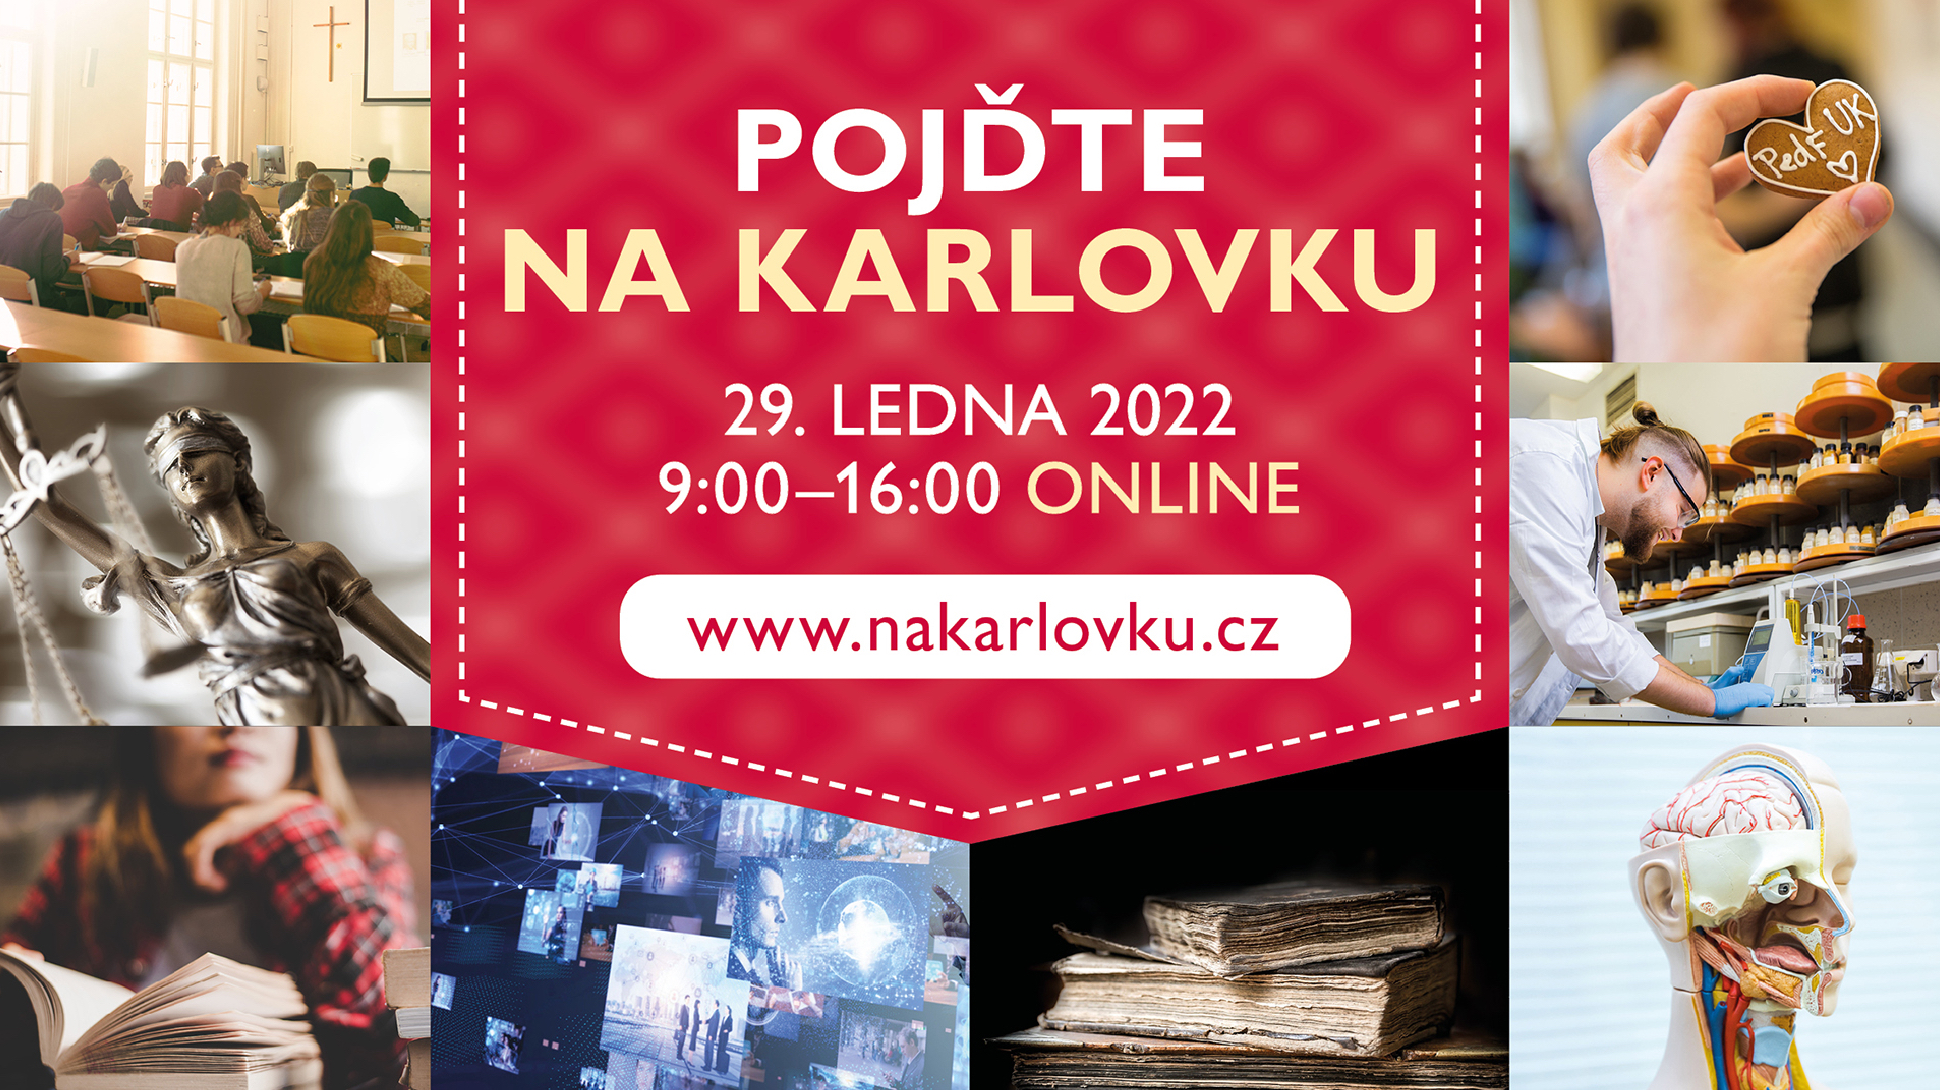 Na Karlovku Tour – Online 29. 1. 2022